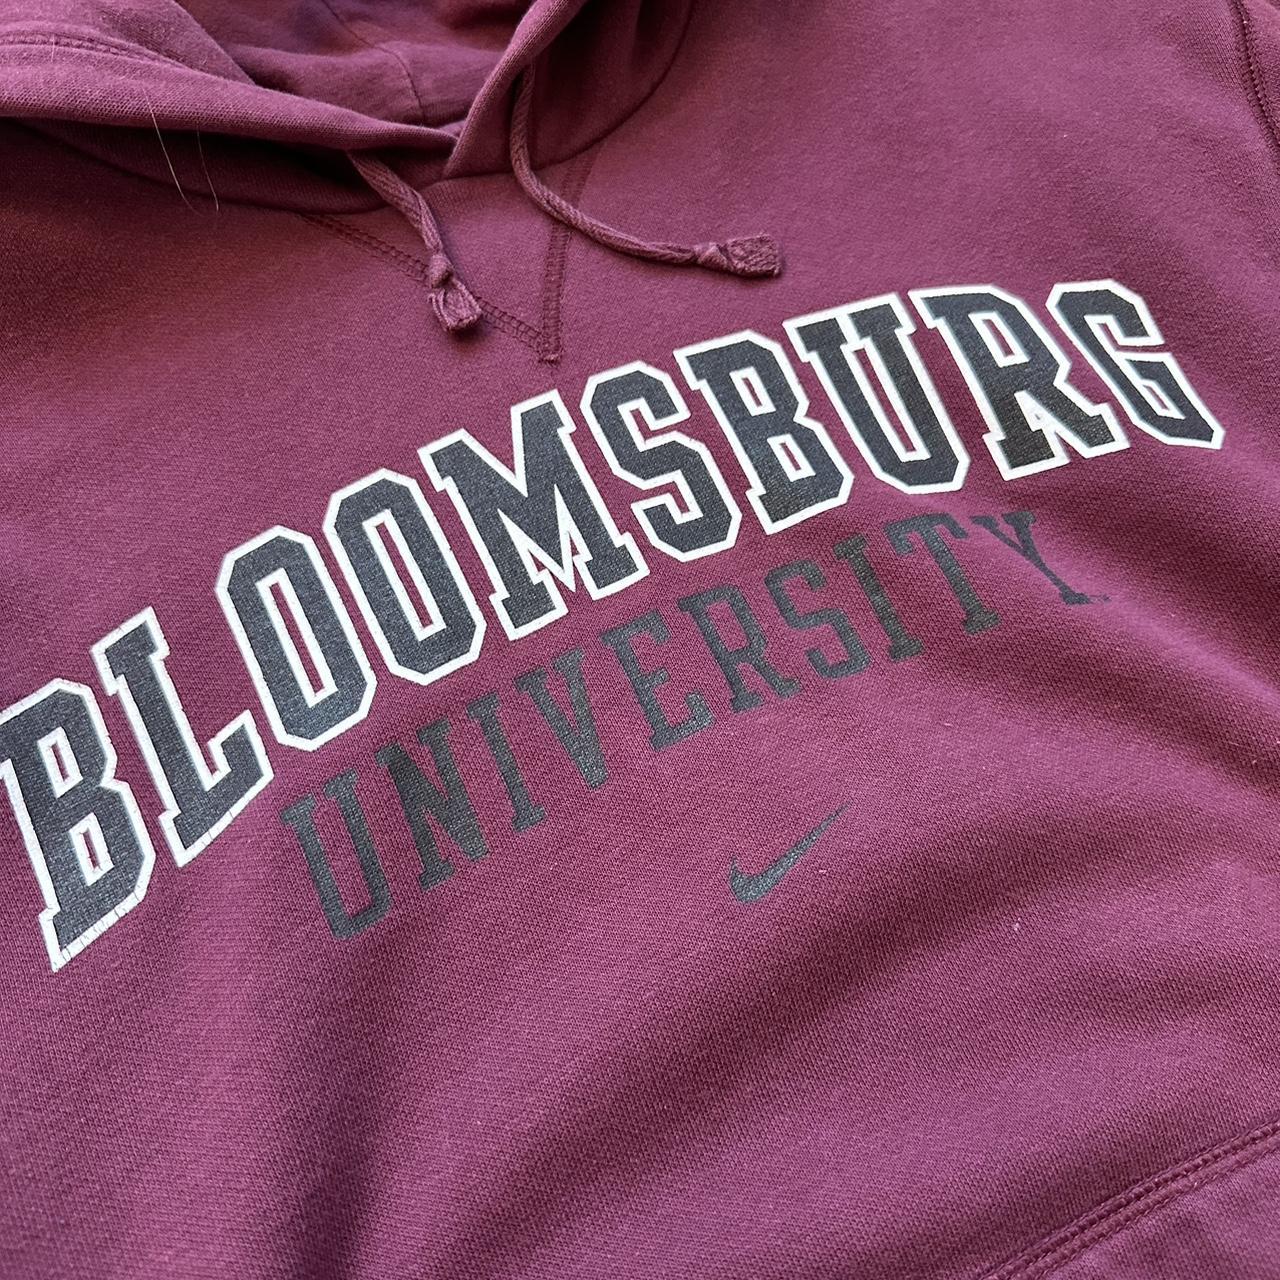 bloomsburg university nike hoodie - great... - Depop